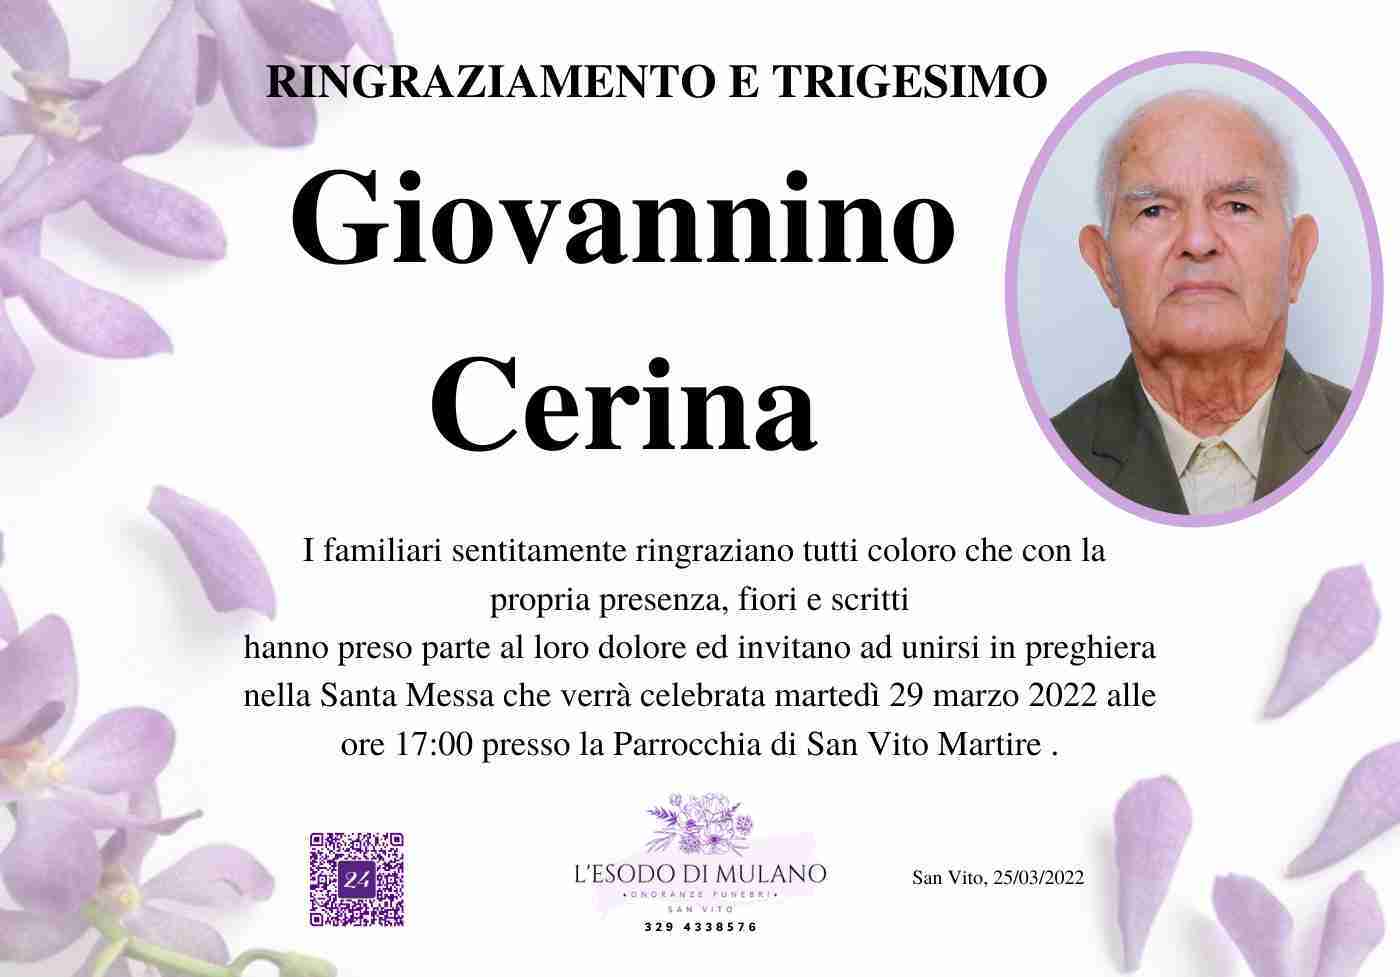 Giovannino Cerina